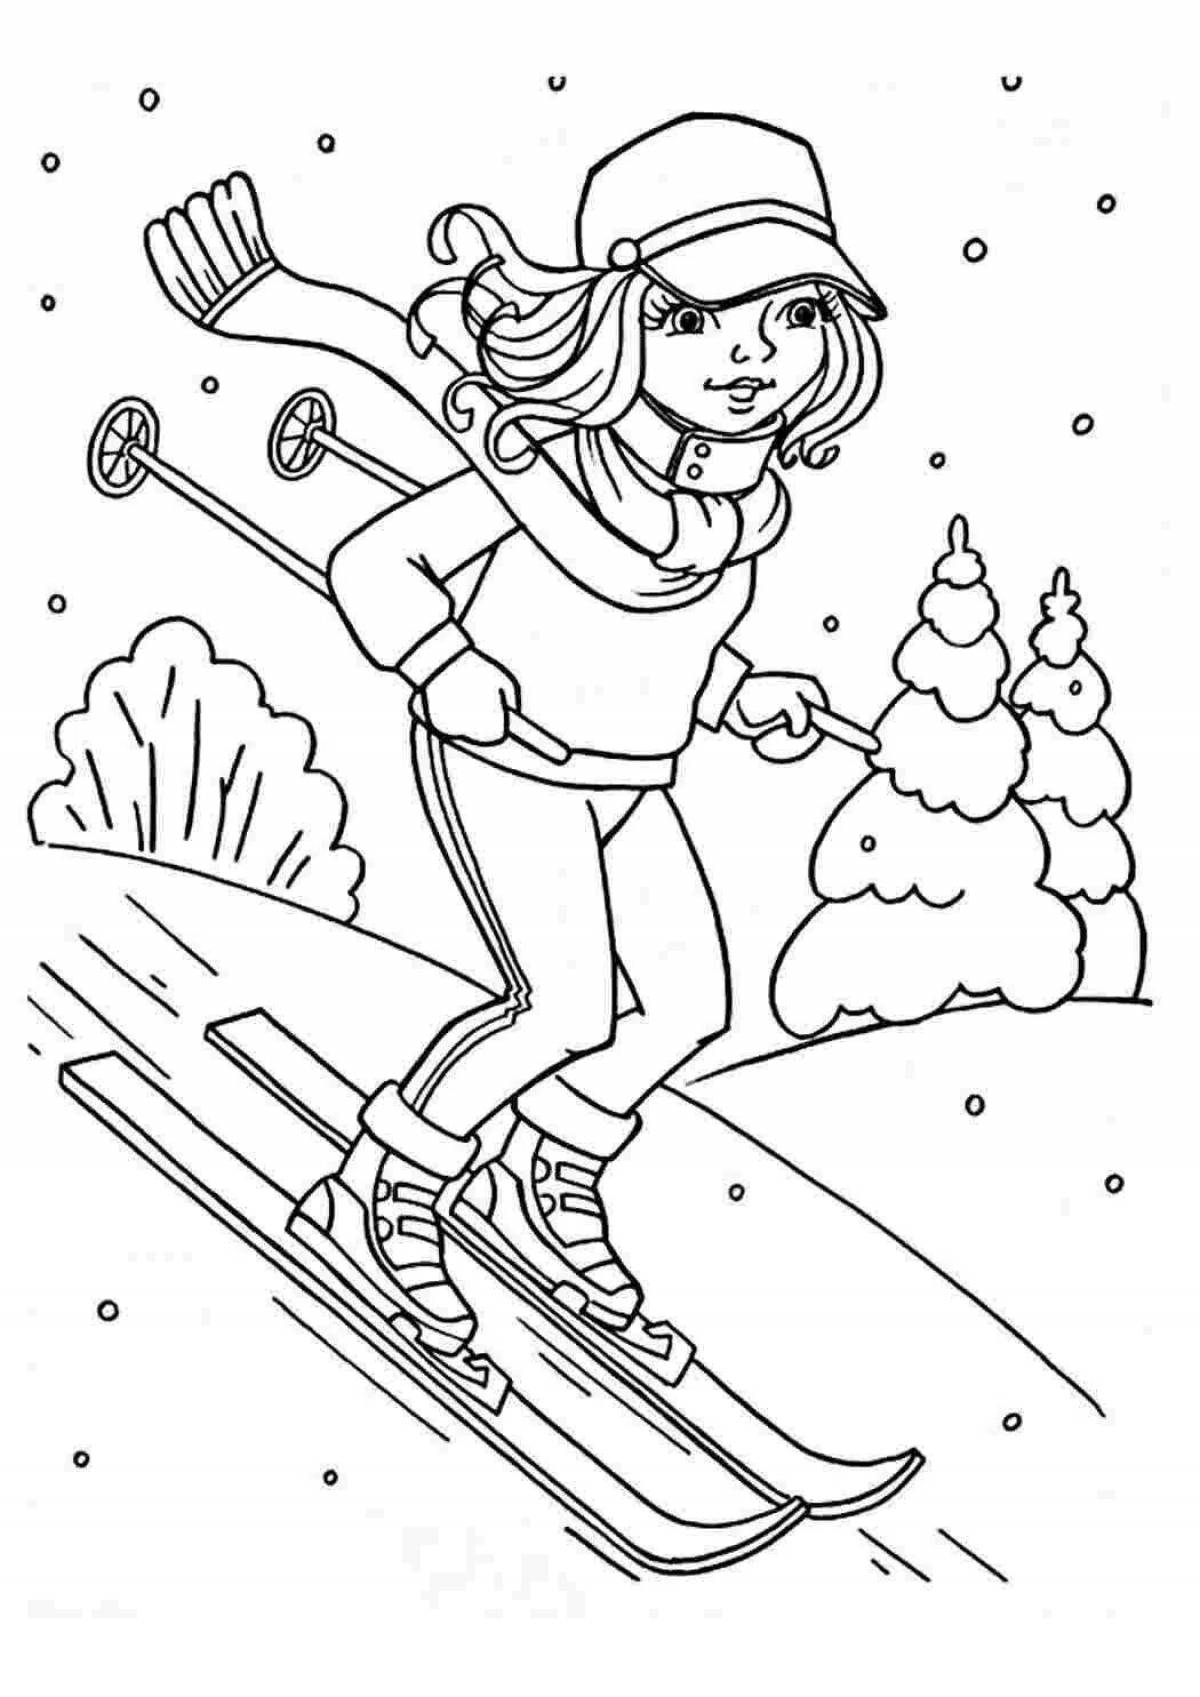 Яркая раскраска для катания на лыжах